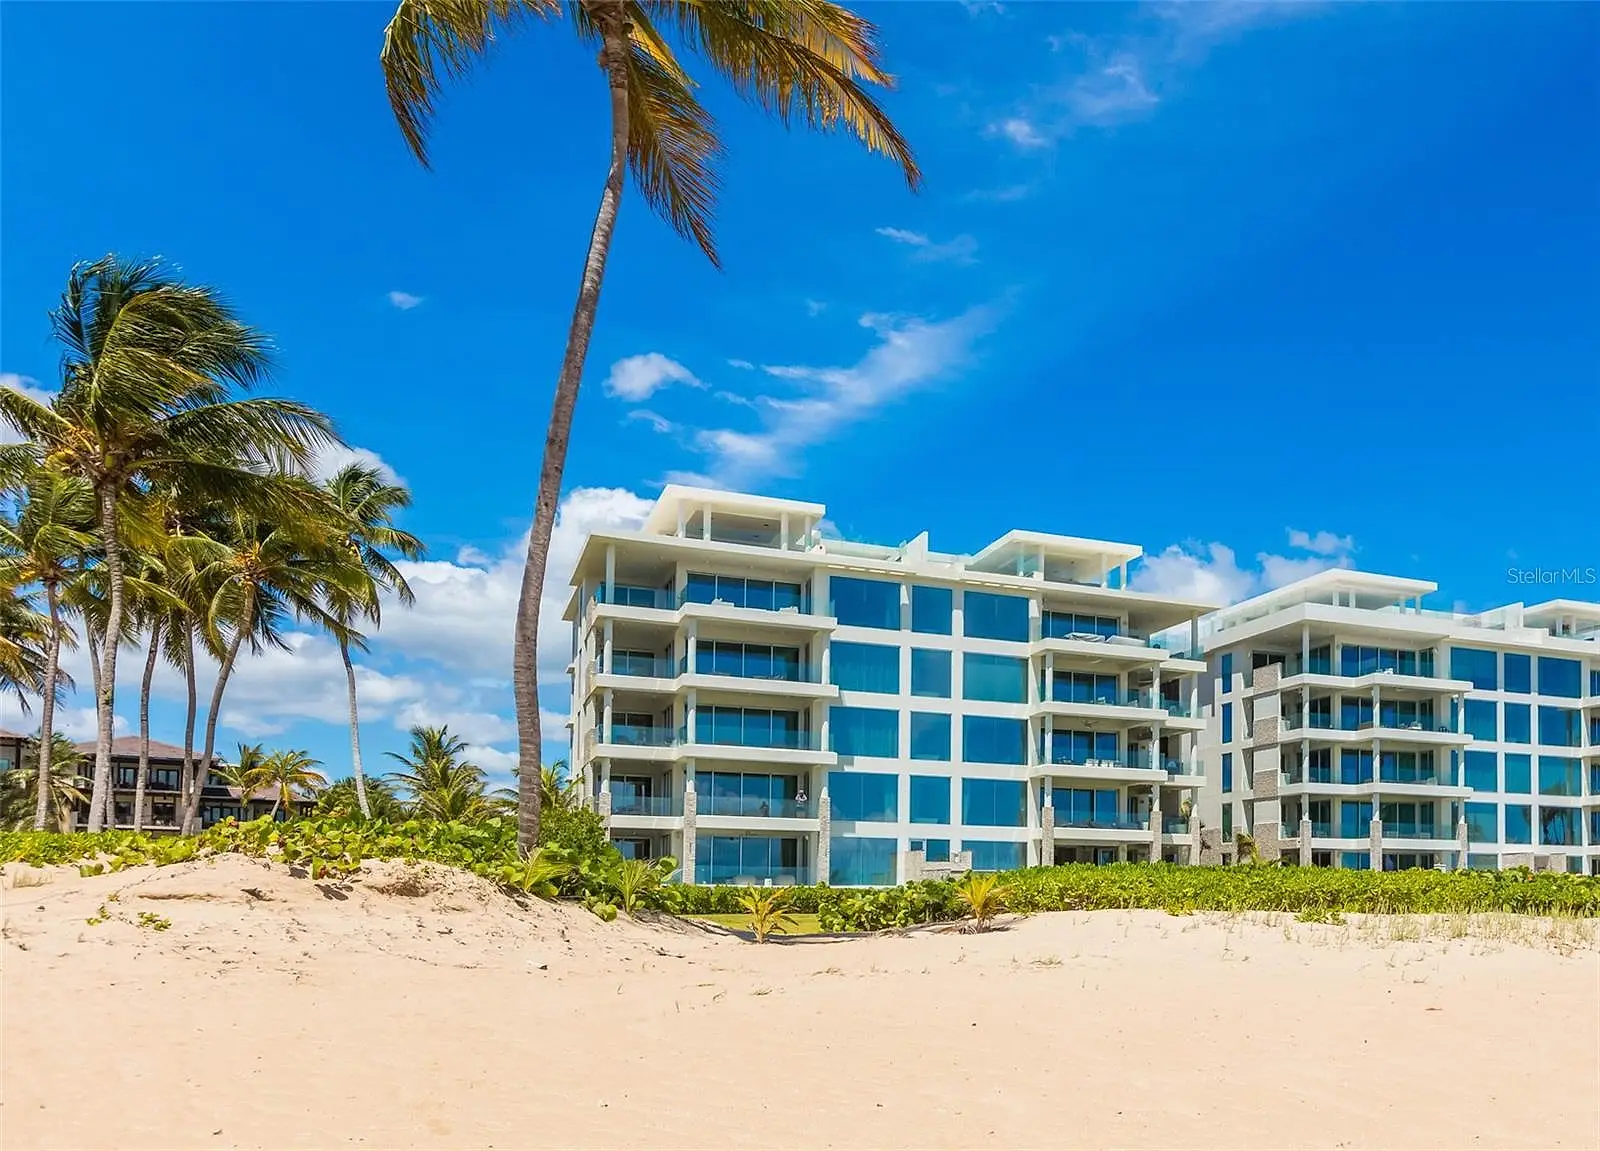 Ocean Drive St. Regis Bahia Beach Resort